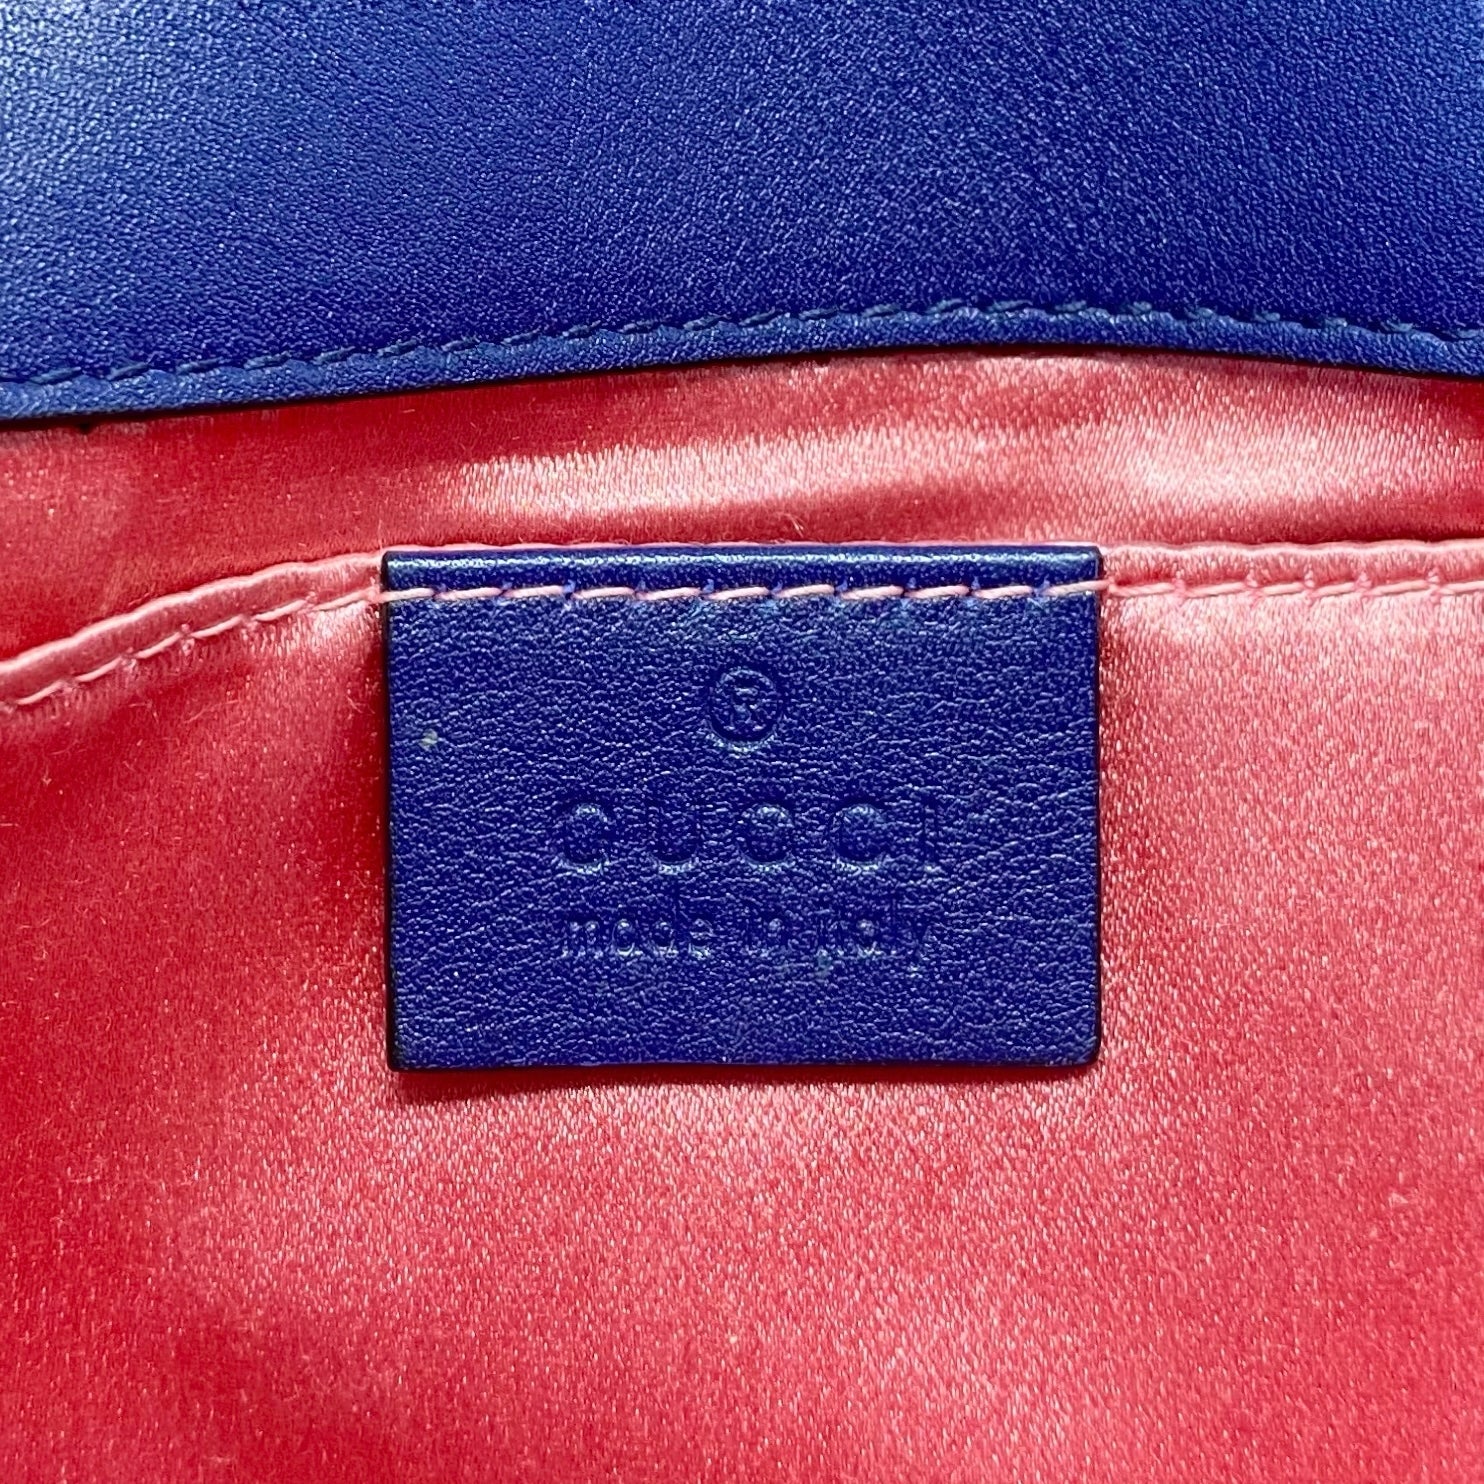 Gucci Blue Velvet Mini GG Marmont Bag